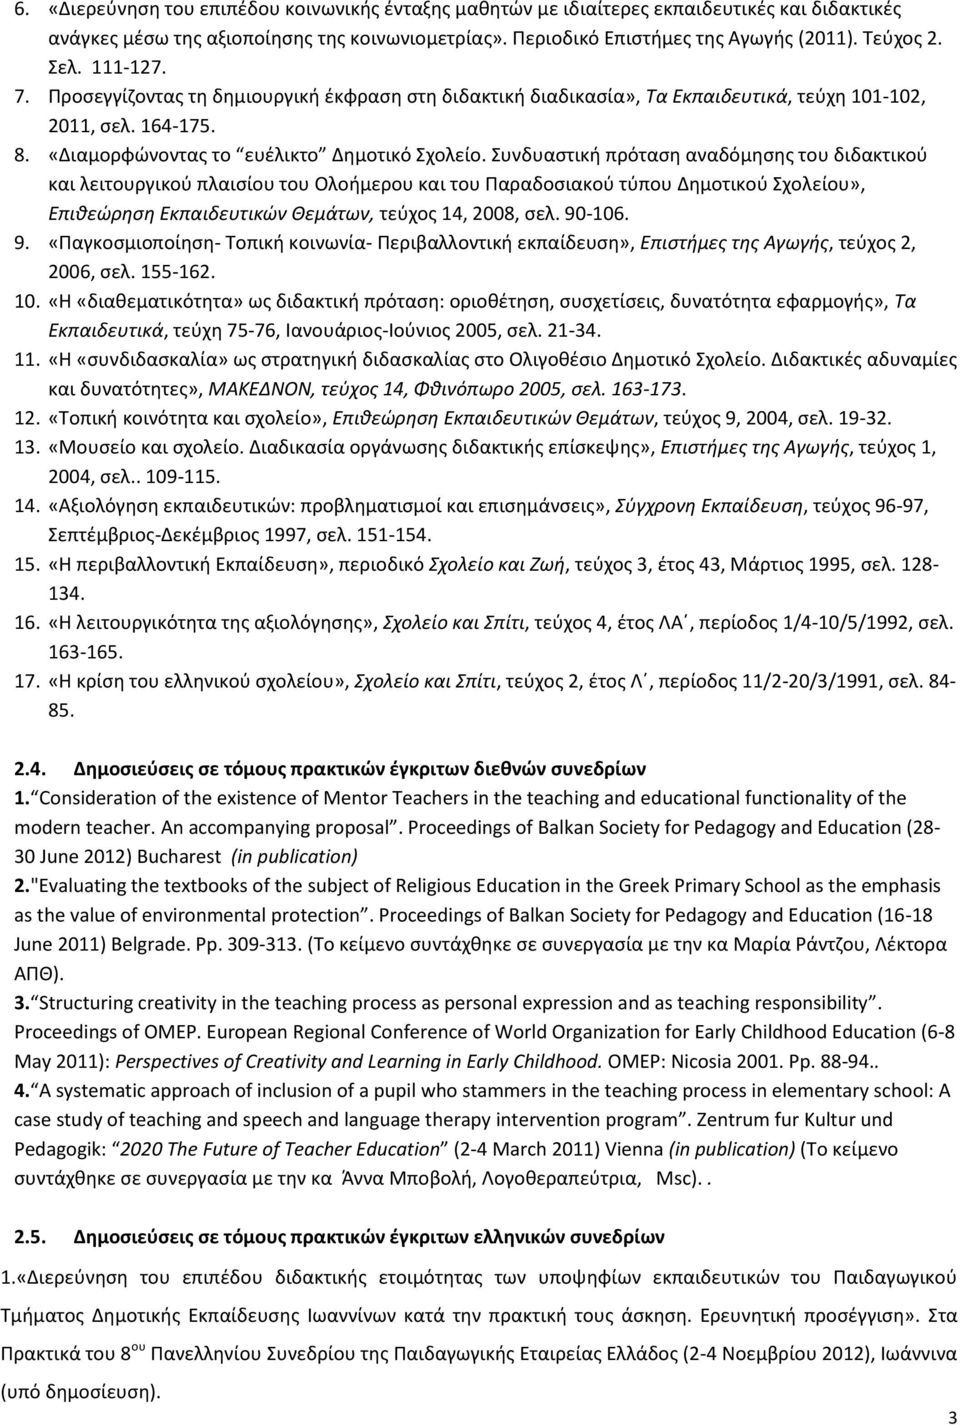 Συνδυαστική πρόταση αναδόμησης του διδακτικού και λειτουργικού πλαισίου του Ολοήμερου και του Παραδοσιακού τύπου Δημοτικού Σχολείου», Επιθεώρηση Εκπαιδευτικών Θεμάτων, τεύχος 14, 2008, σελ. 90